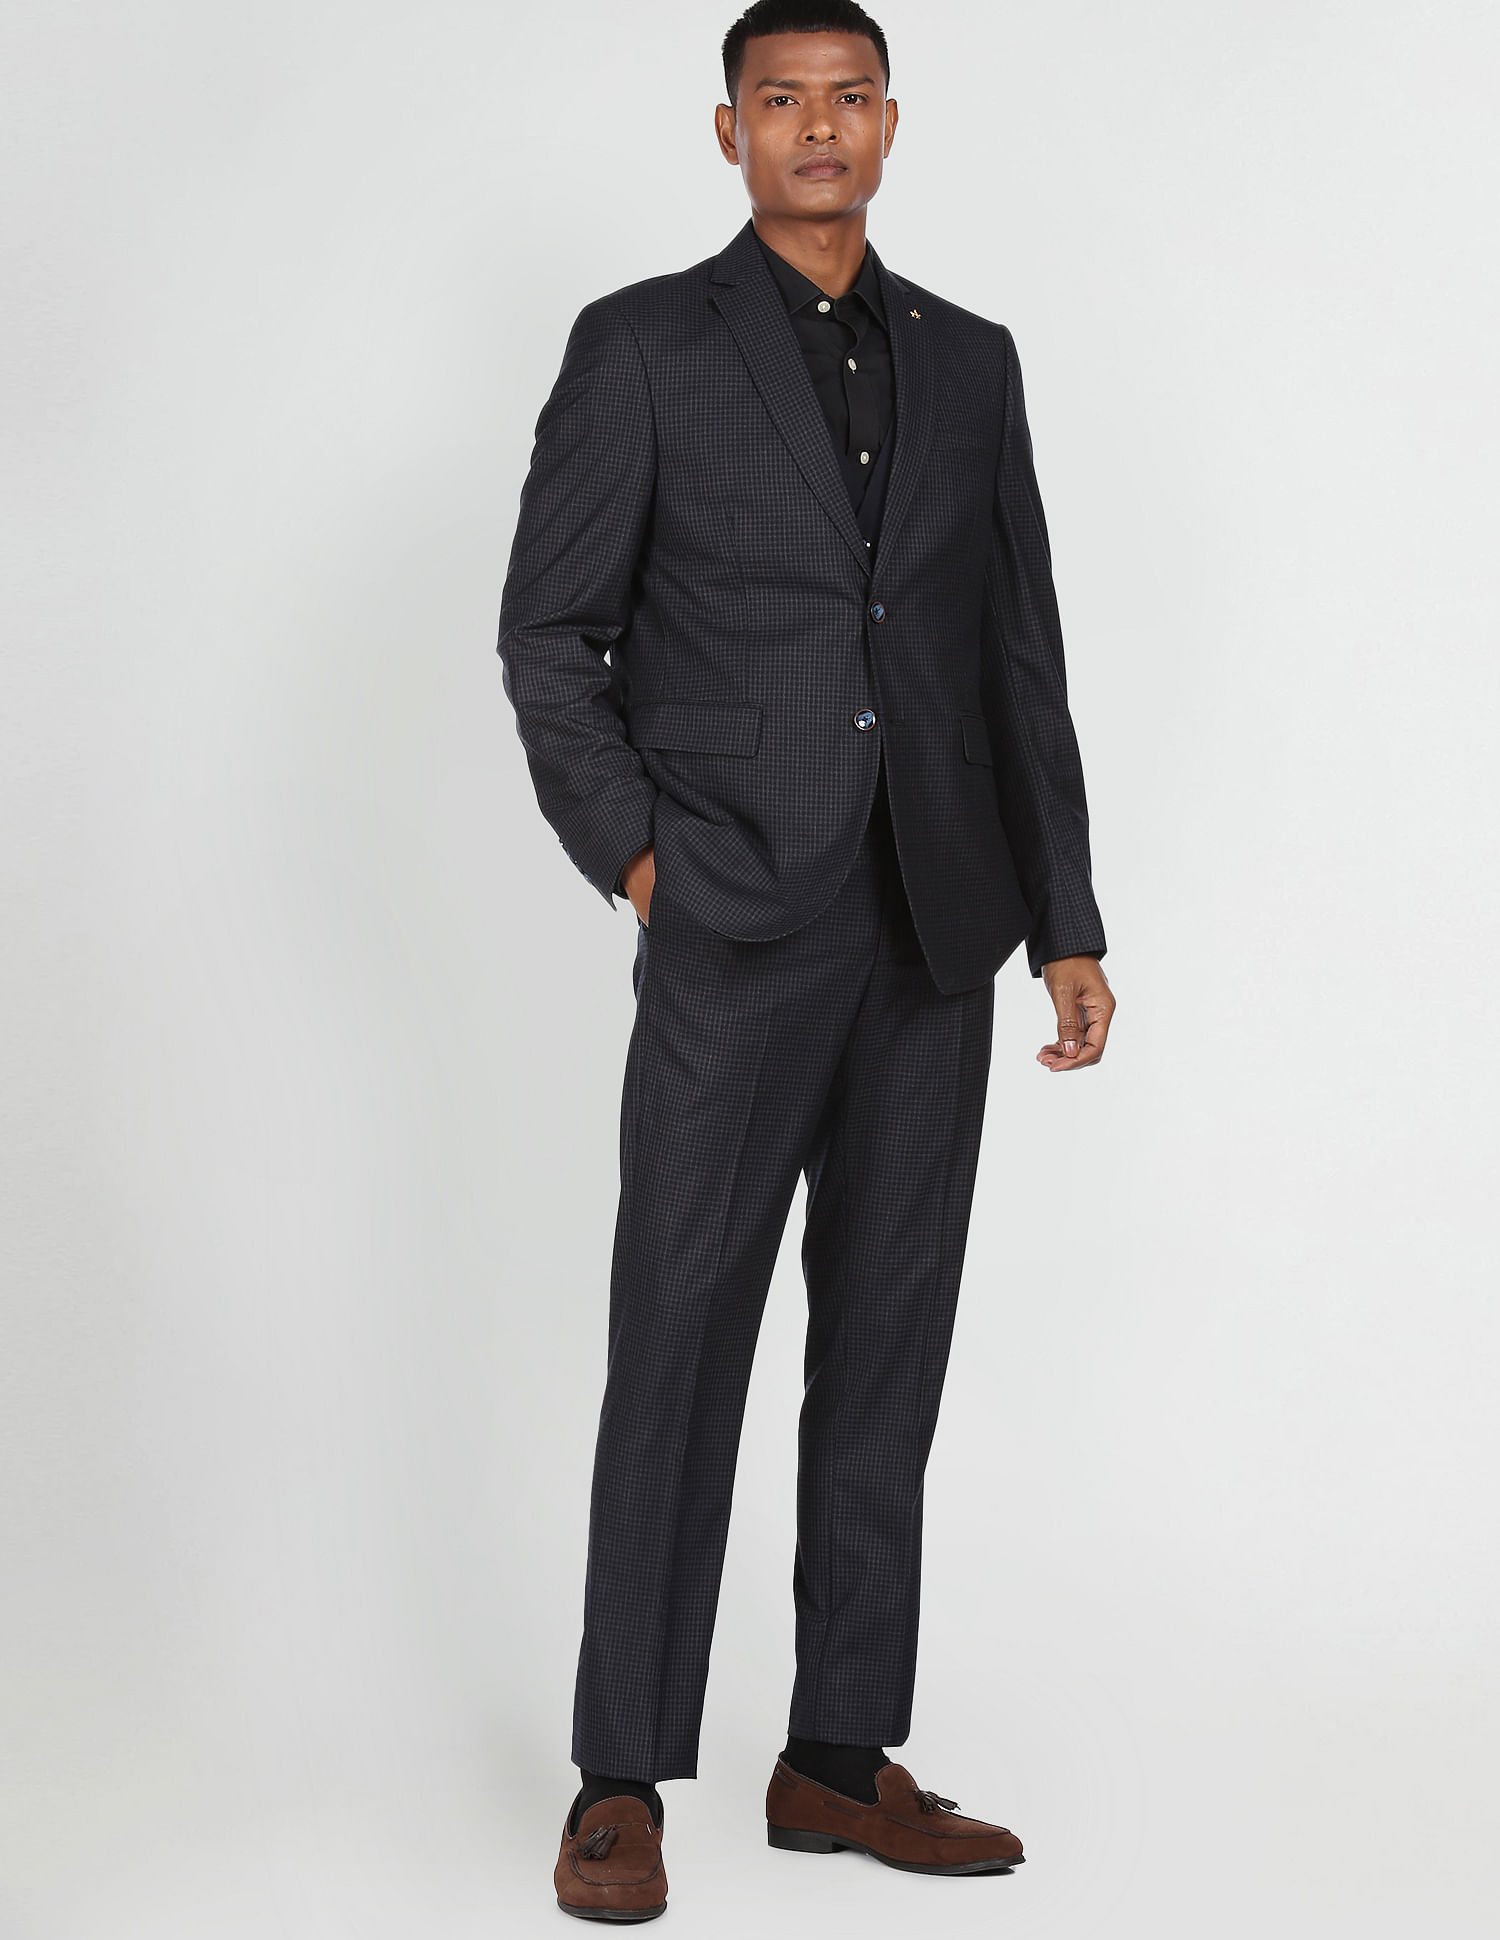 DKGF Boys 4-Piece Suit - DKGF Fashion - 3610294